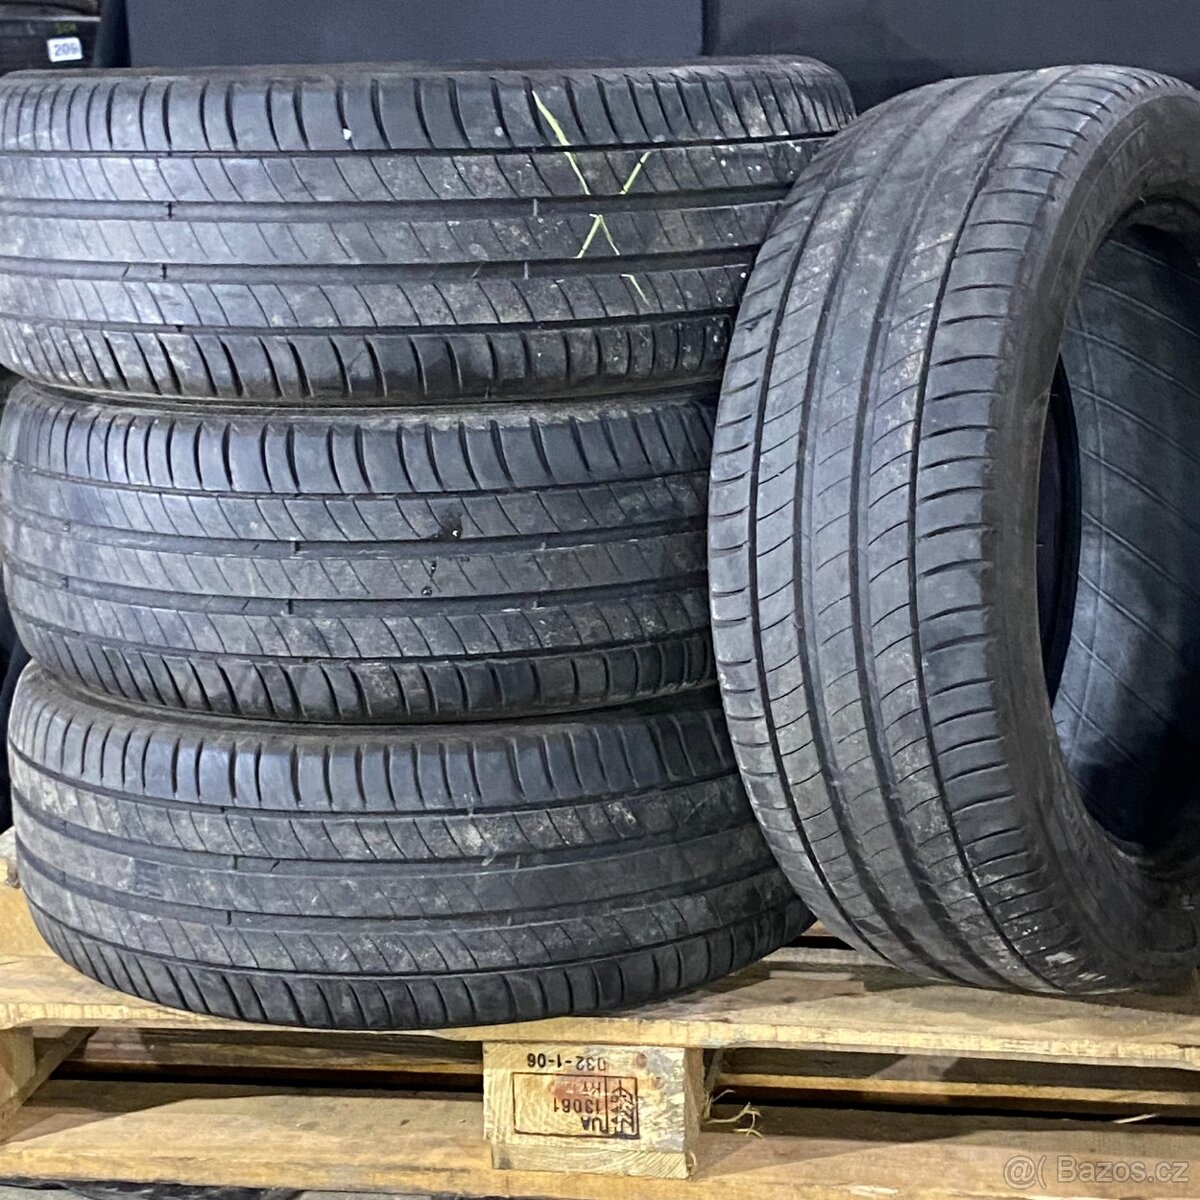 Letní pneu 225/50 R18 95V Michelin 4,5-5mm